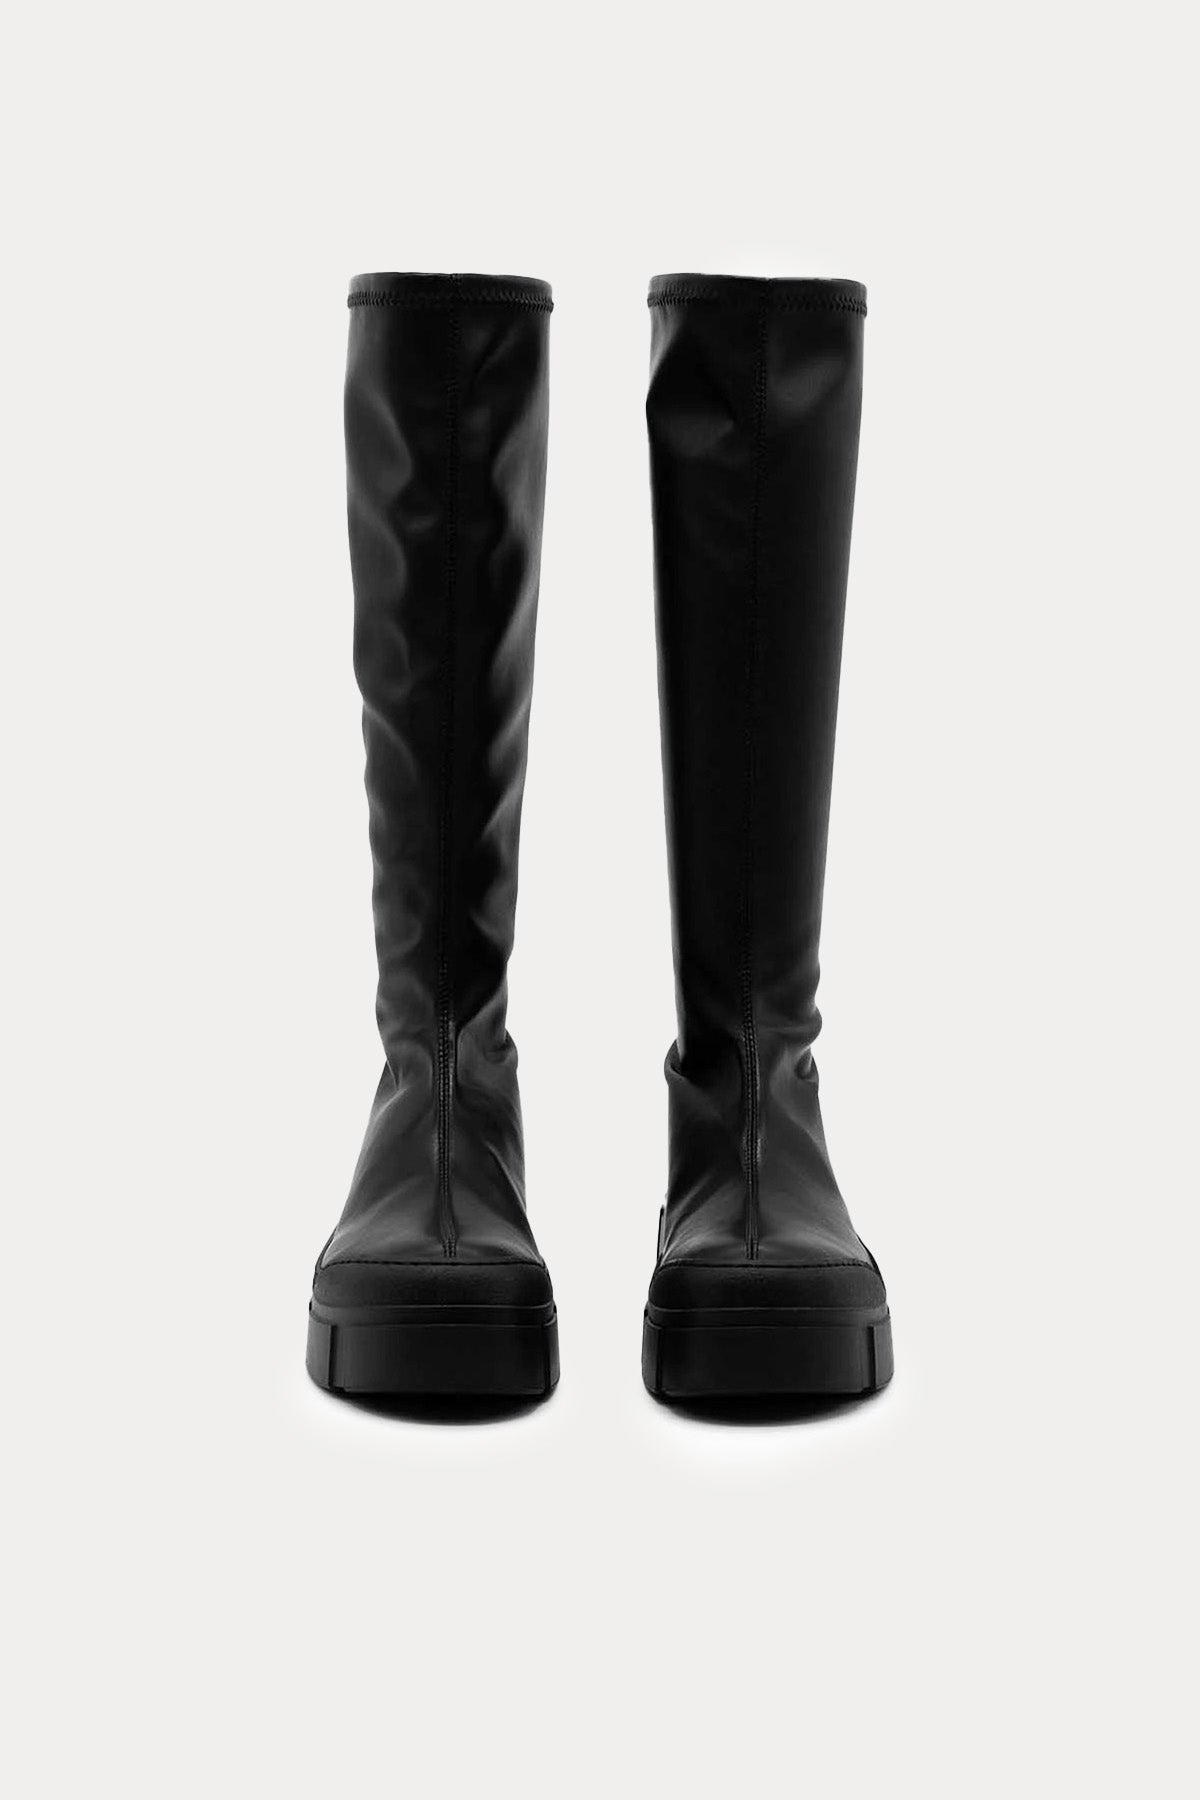 Vic Matie Arkadan Fermuarlı Çizme-Libas Trendy Fashion Store